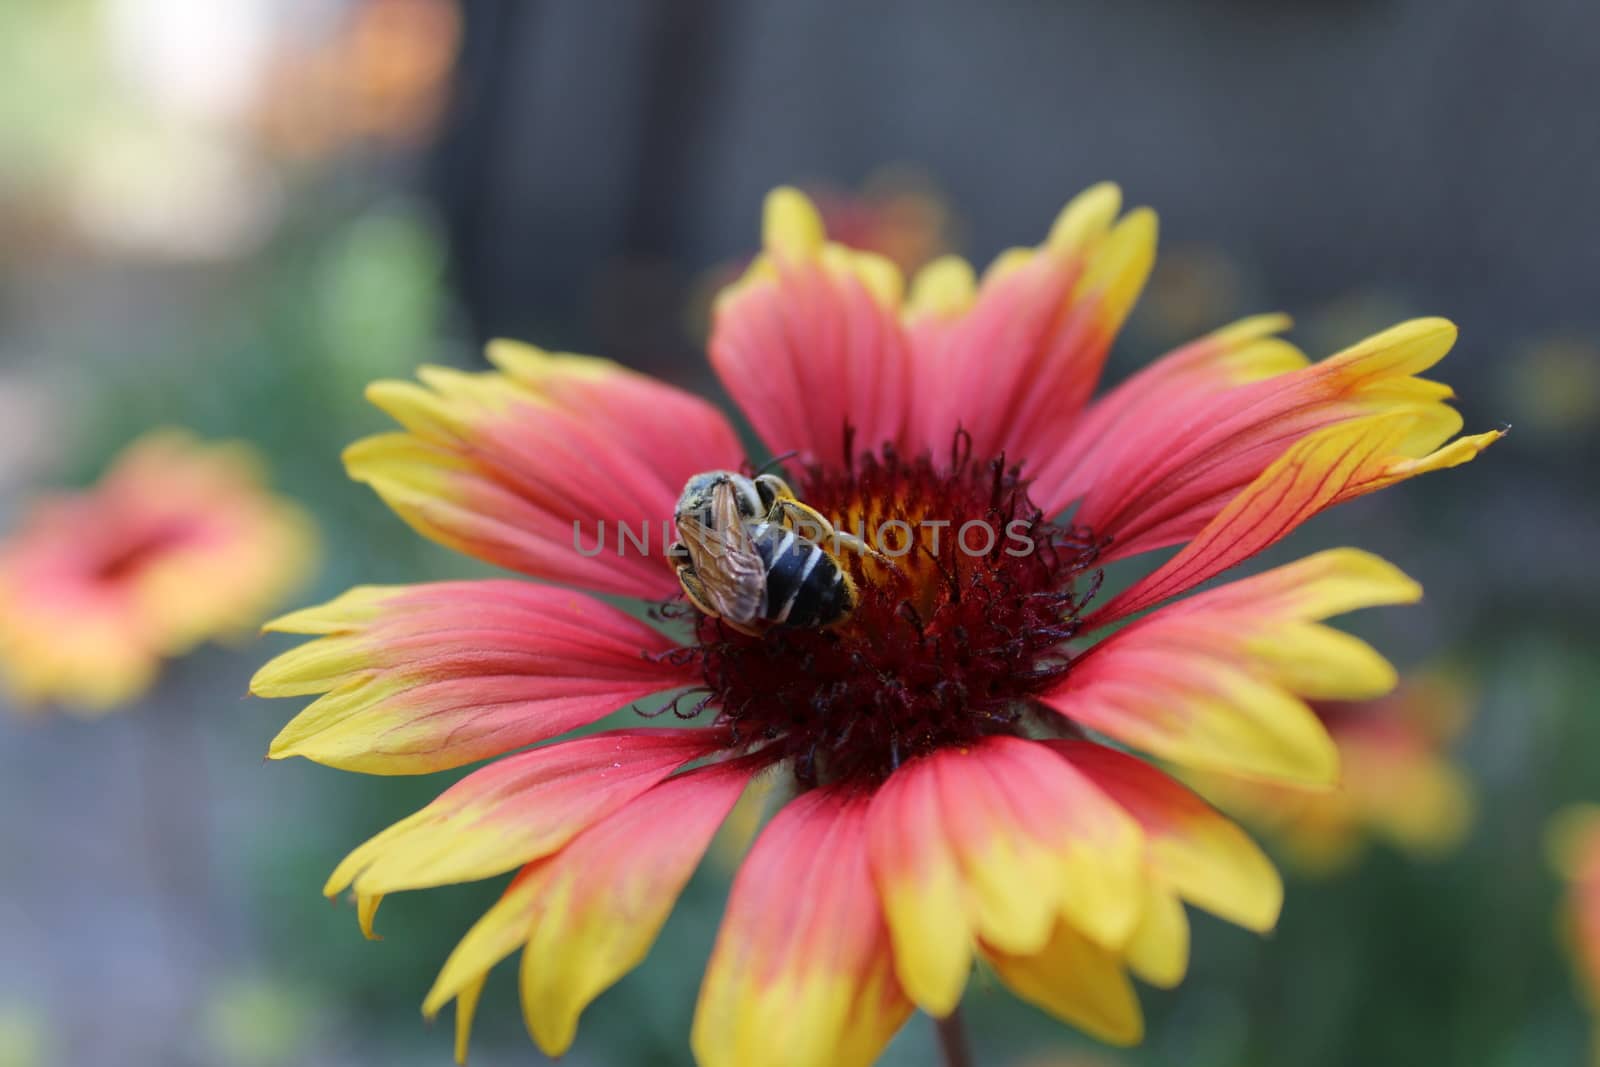 Honey bee. by nurjan100